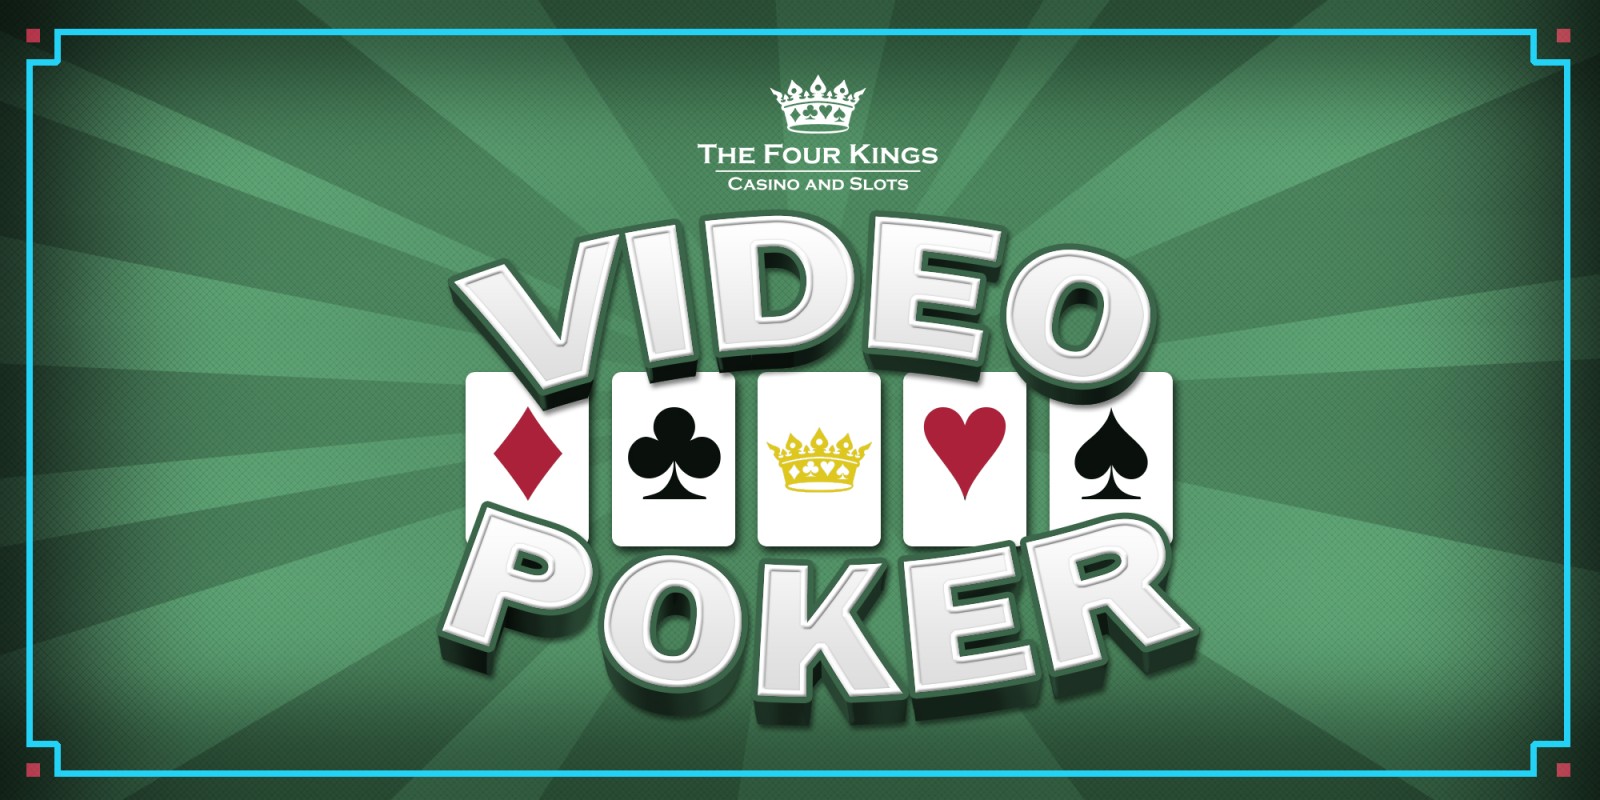 Four Kings: Vidéo Poker